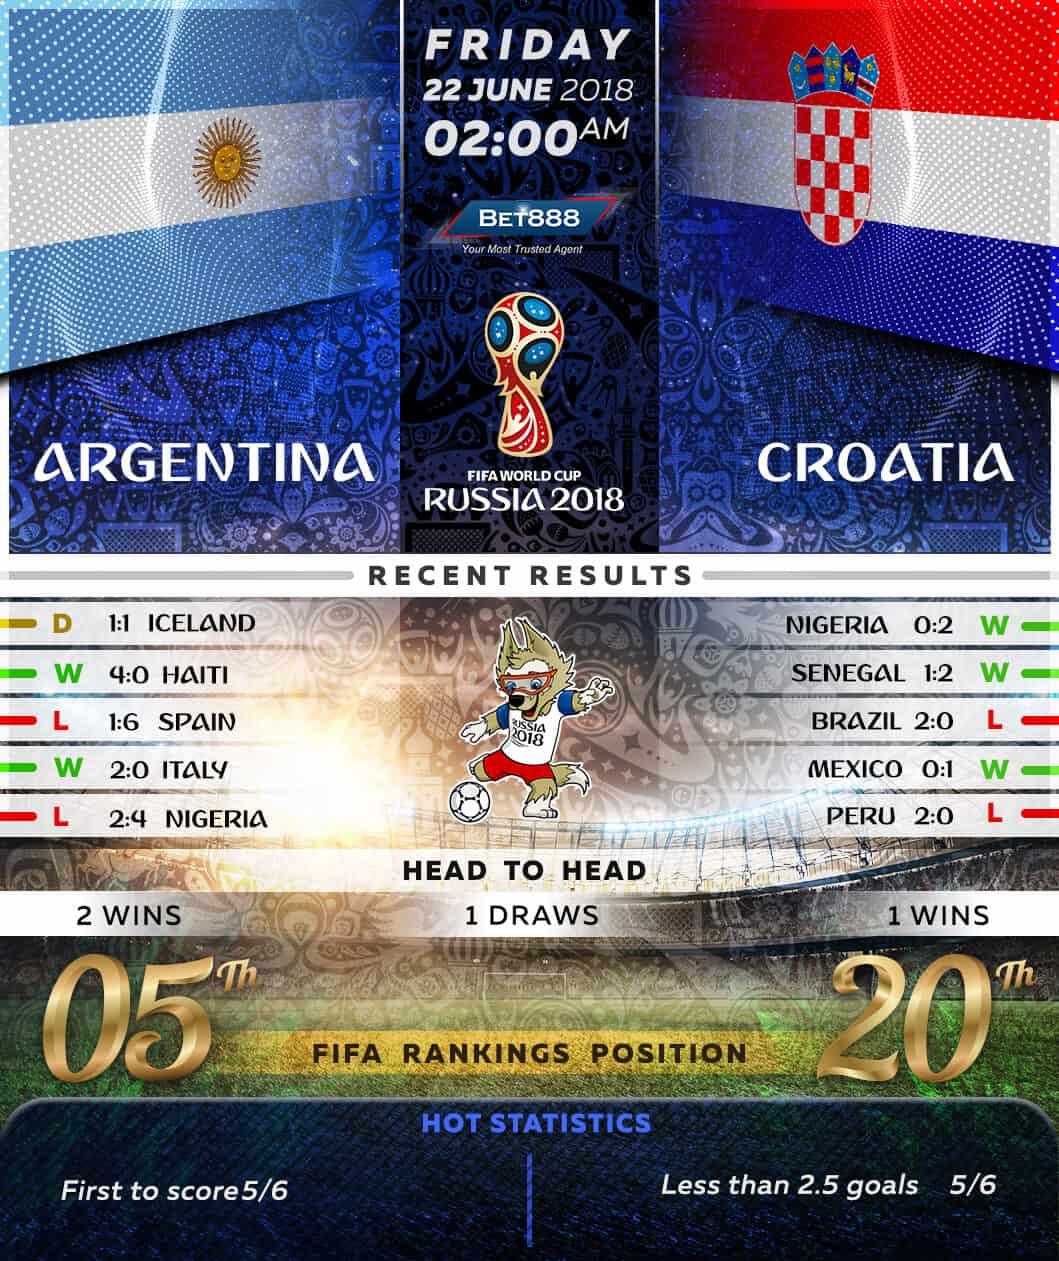 Argentina vs Croatia 21/06/18